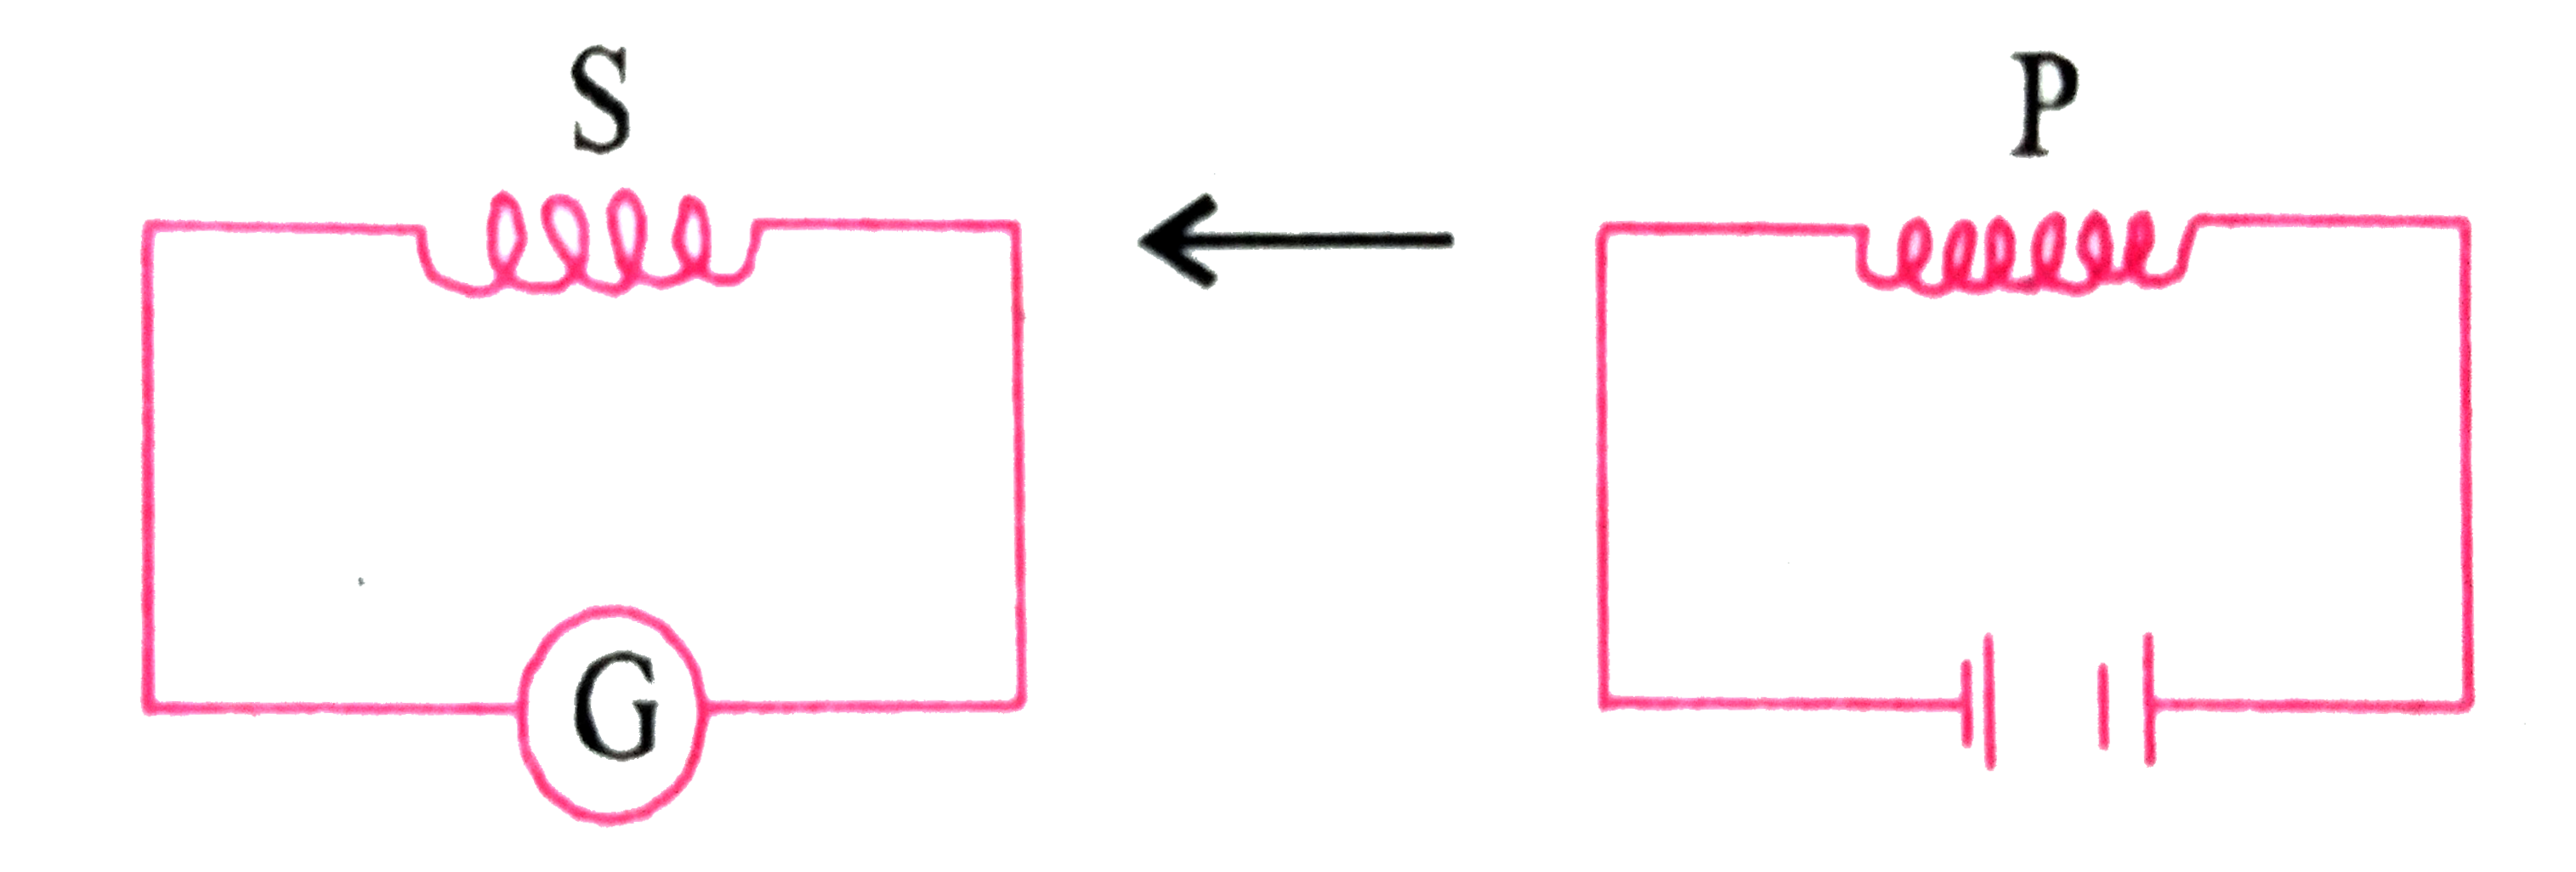 जब निम्न चित्र के अनुसार प्राथमिक कुंडली (P ), द्वितीयक कुंडली (S ) की ओर गति करती है  तब धारामापी  में शैक्षणिक  विक्षेप  प्राप्त  होता है । समान बैटरी  से धारामापी  के विक्षेप को कैसे बढ़ाया  जा सकता है  ?